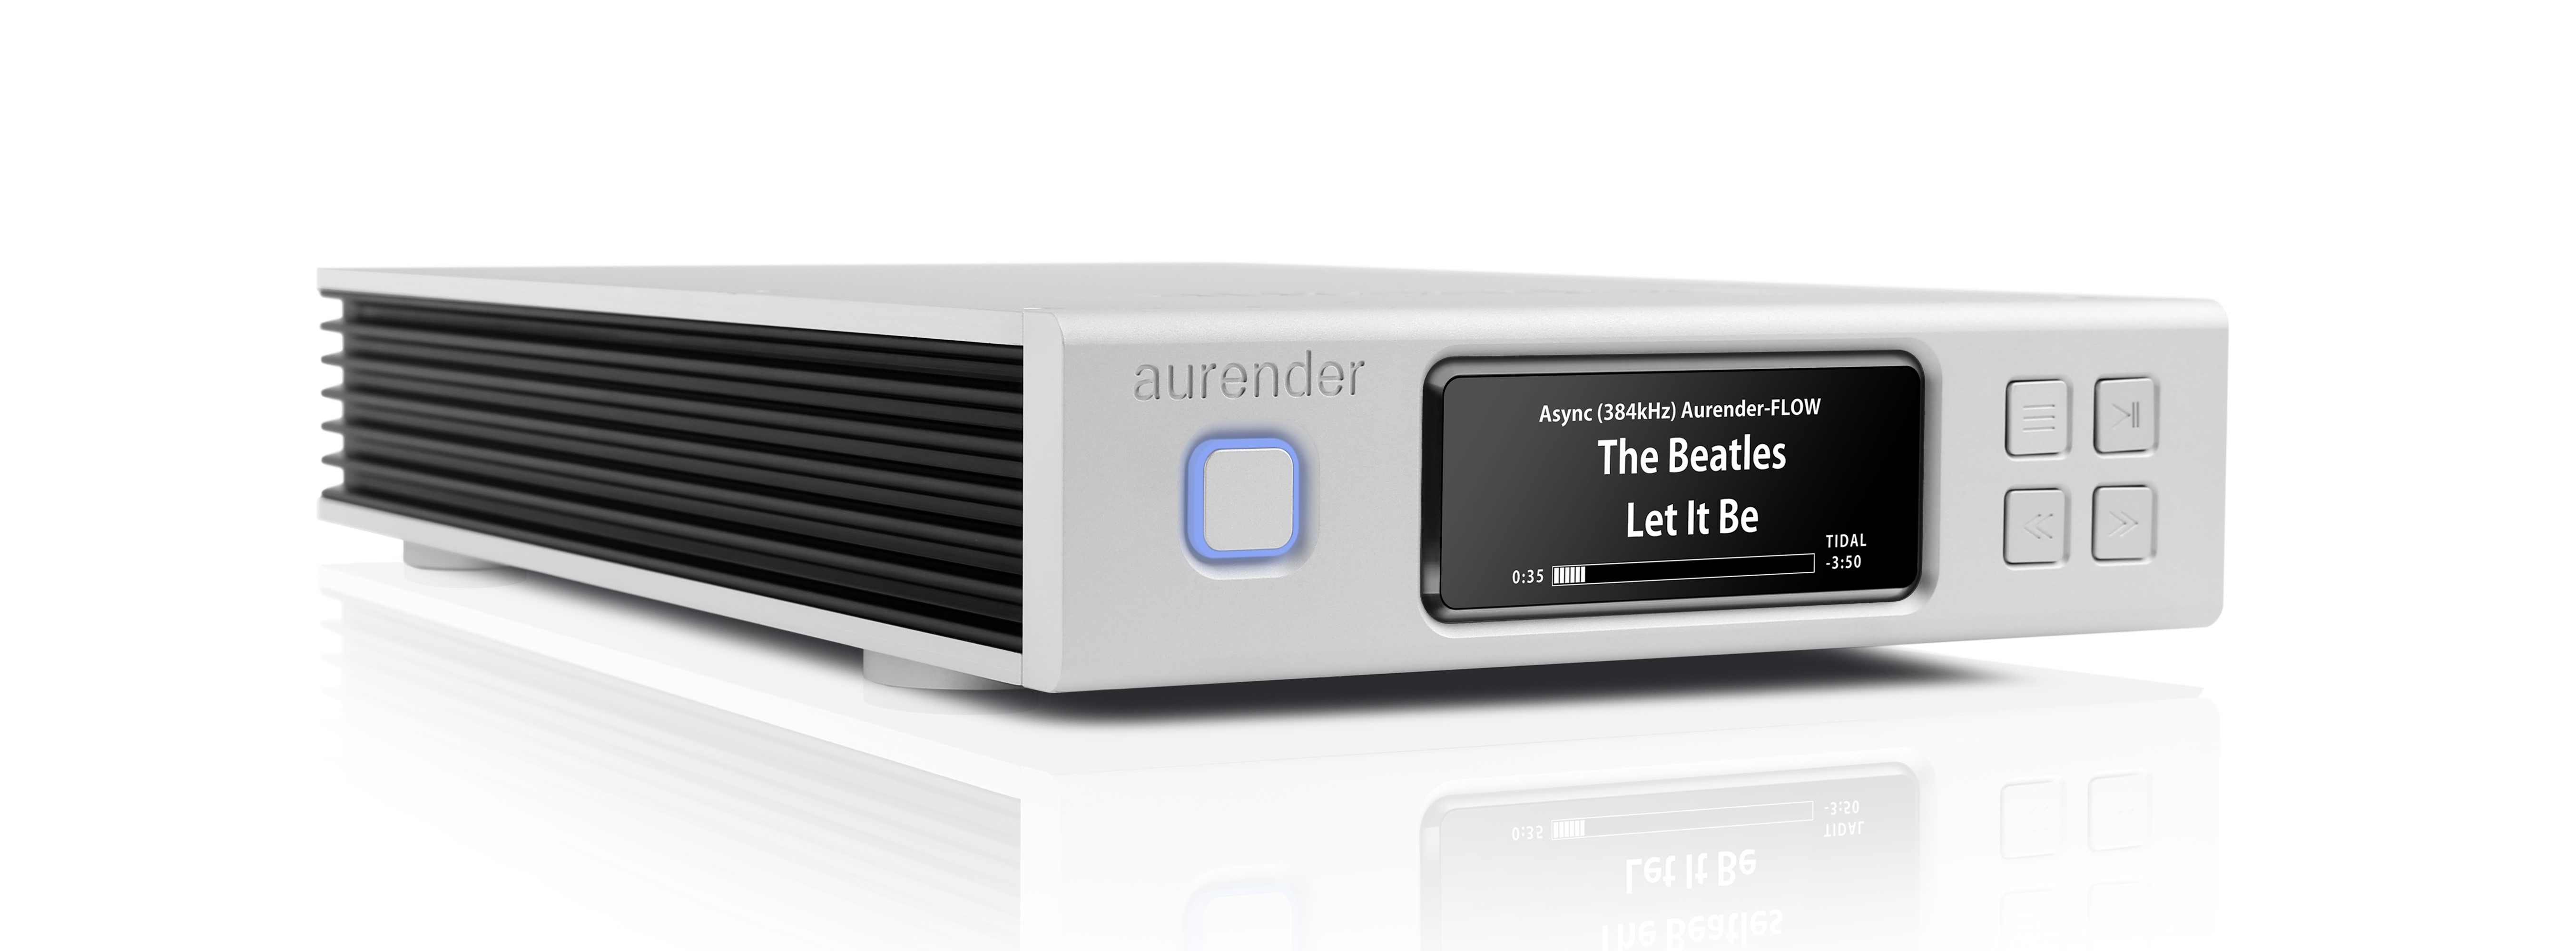 Aurender N100C 4TB musikkserver